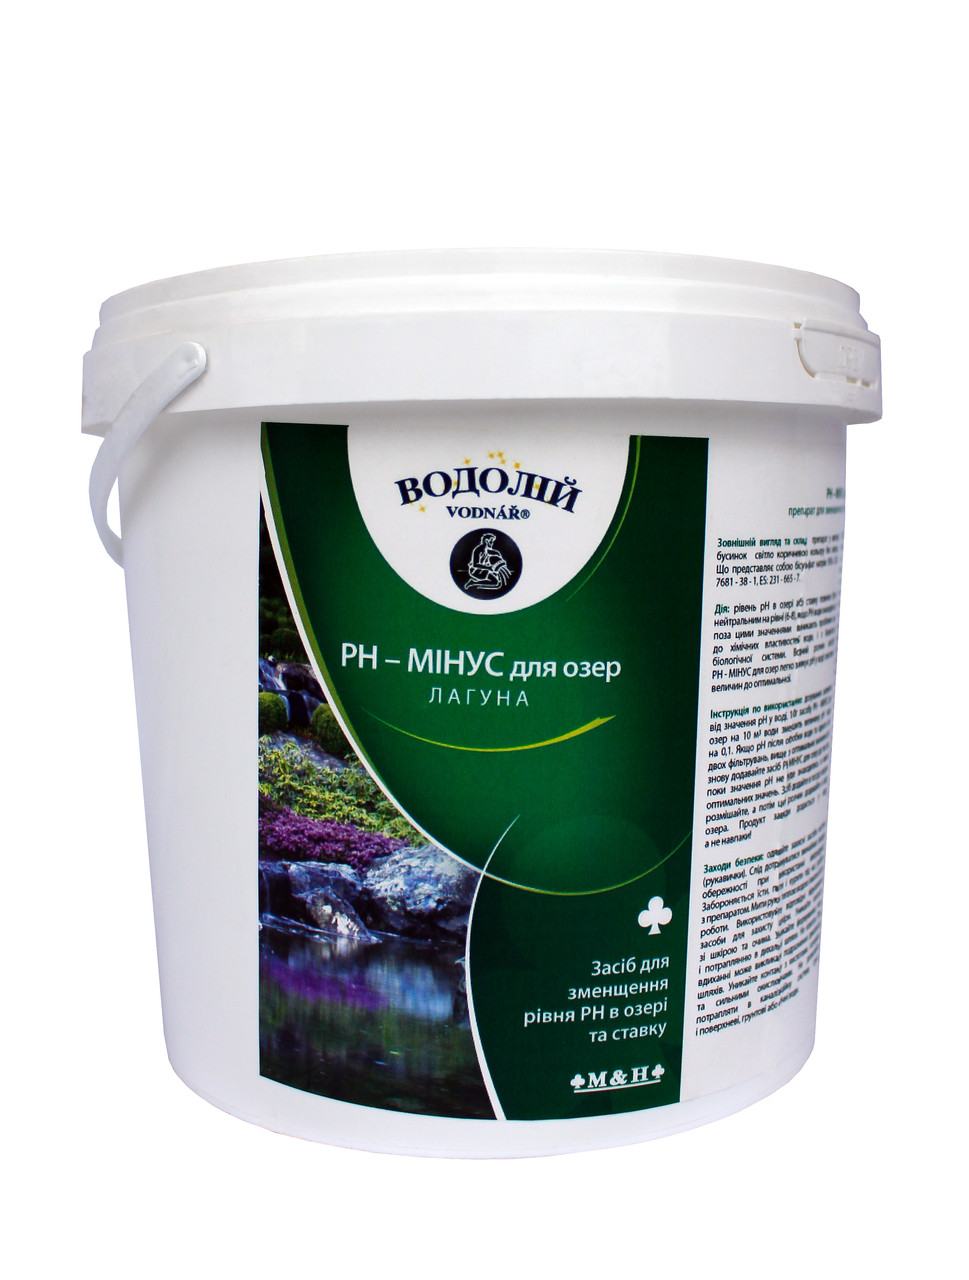 Биологический препарат рh-минус для озер Vodnar 1.5 кг